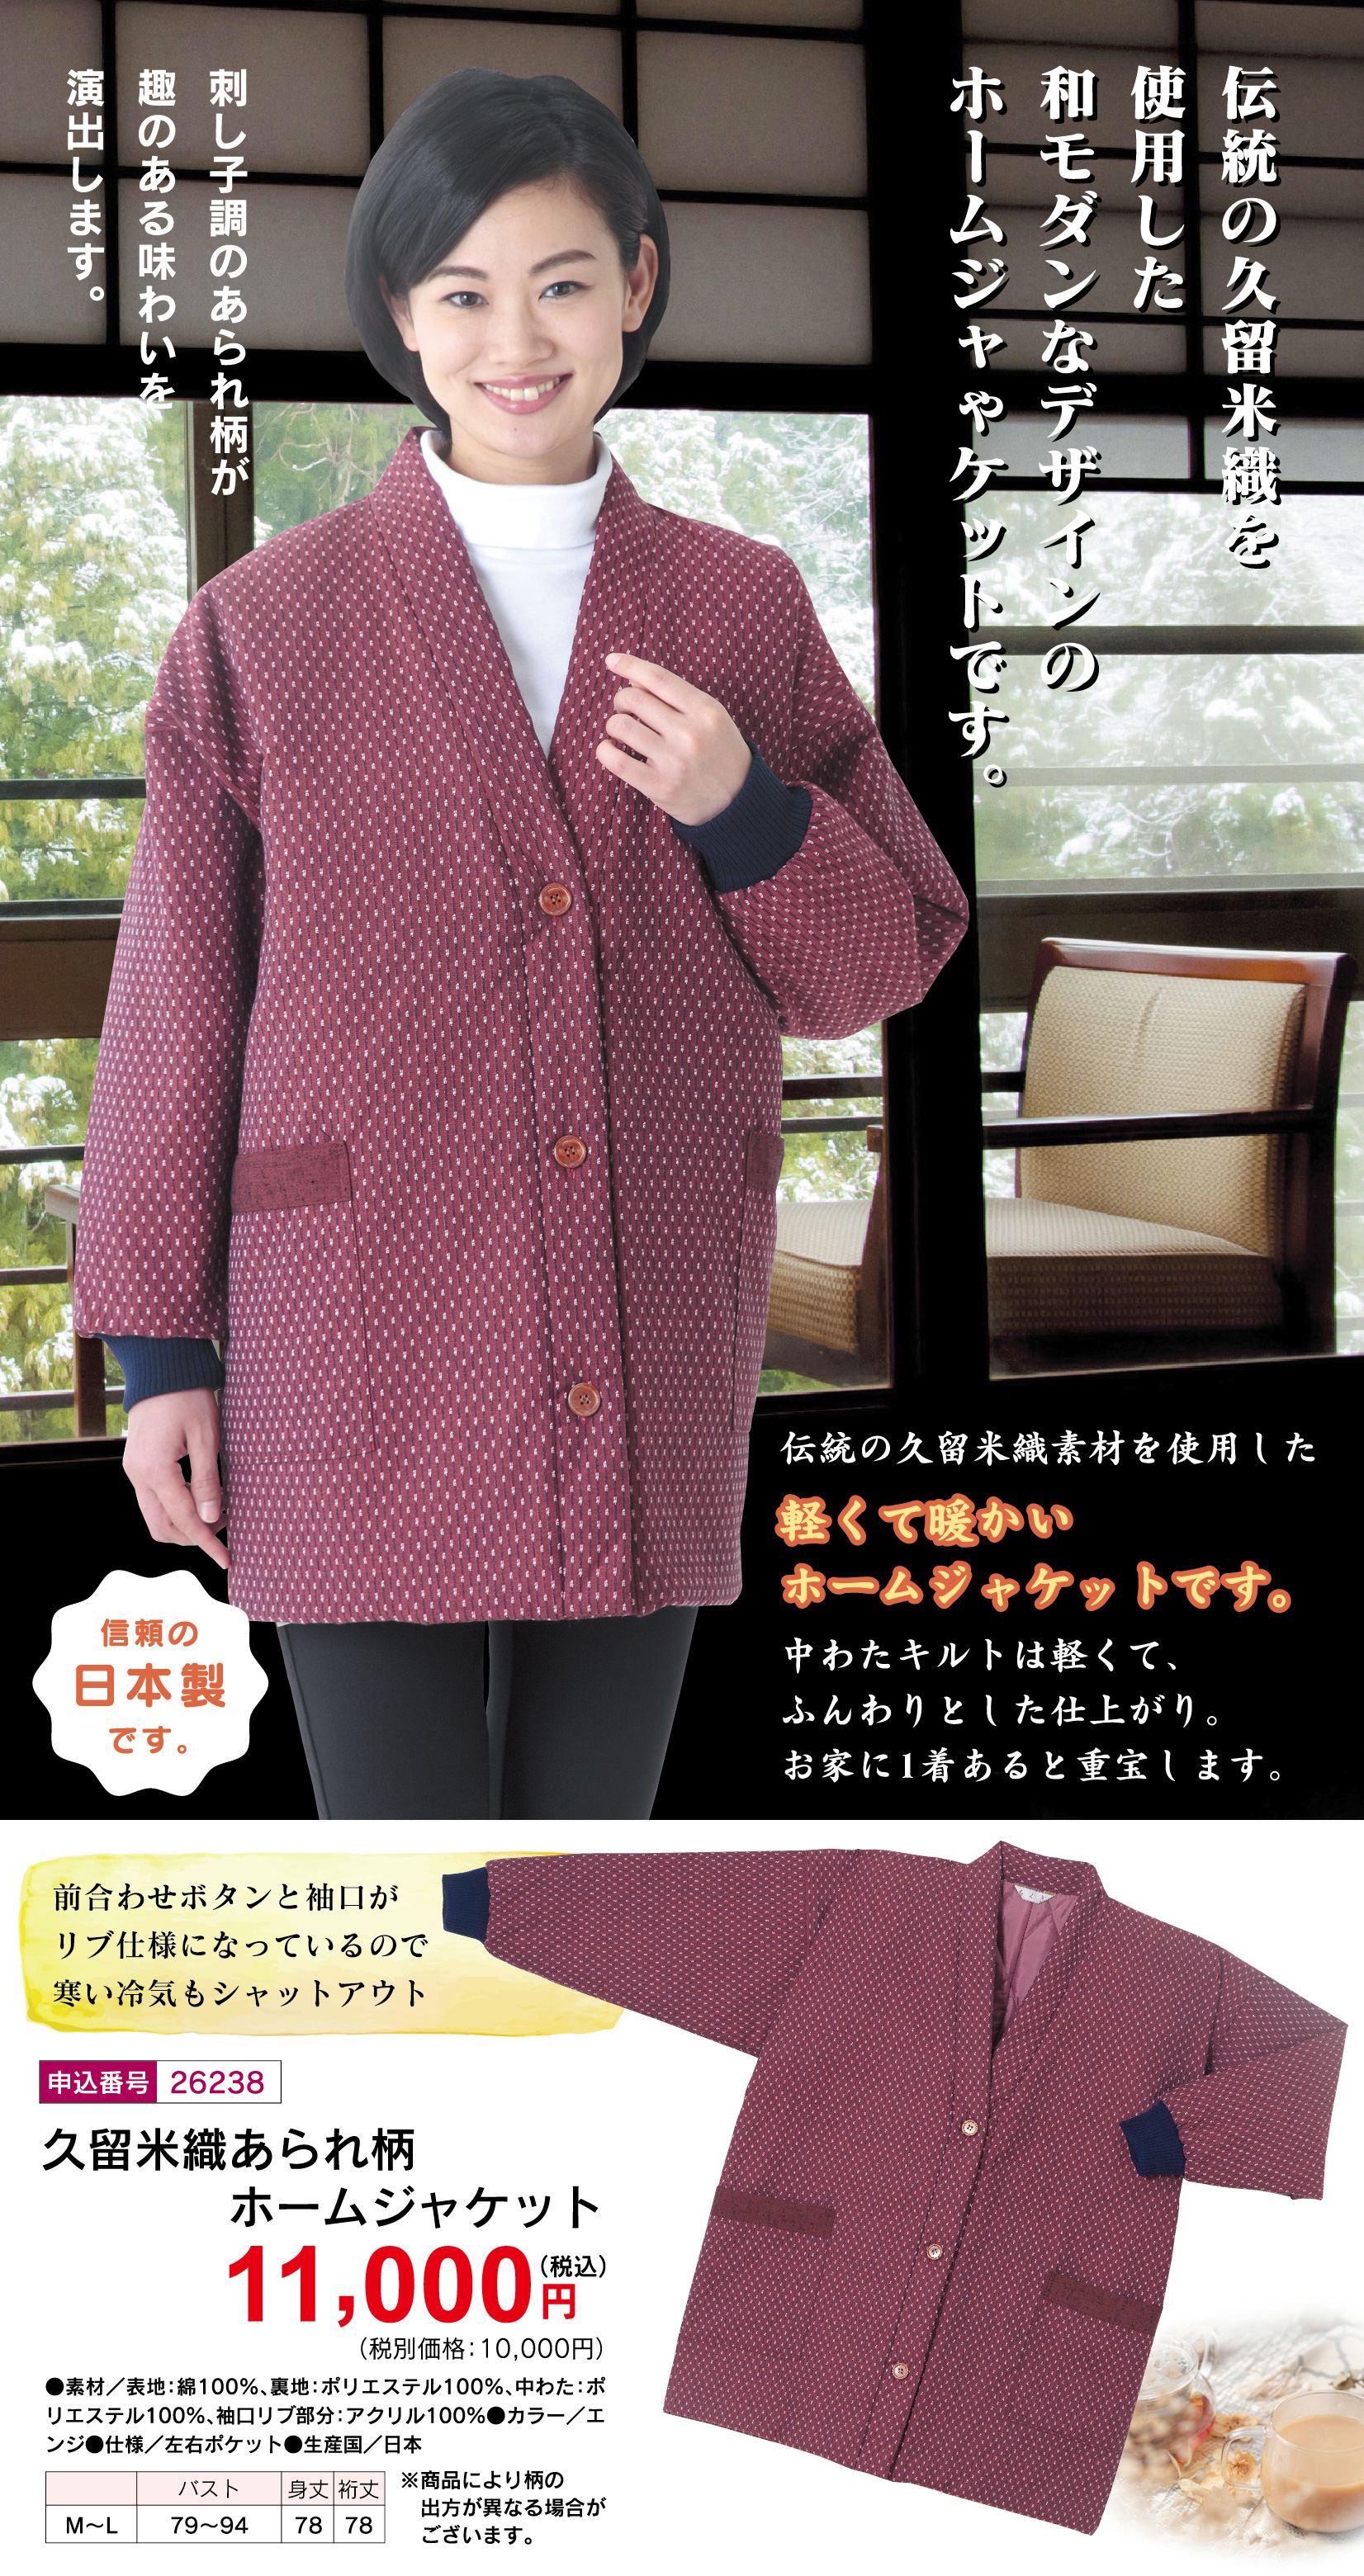 日本製 久留米織あられ柄ホームジャケットの詳細